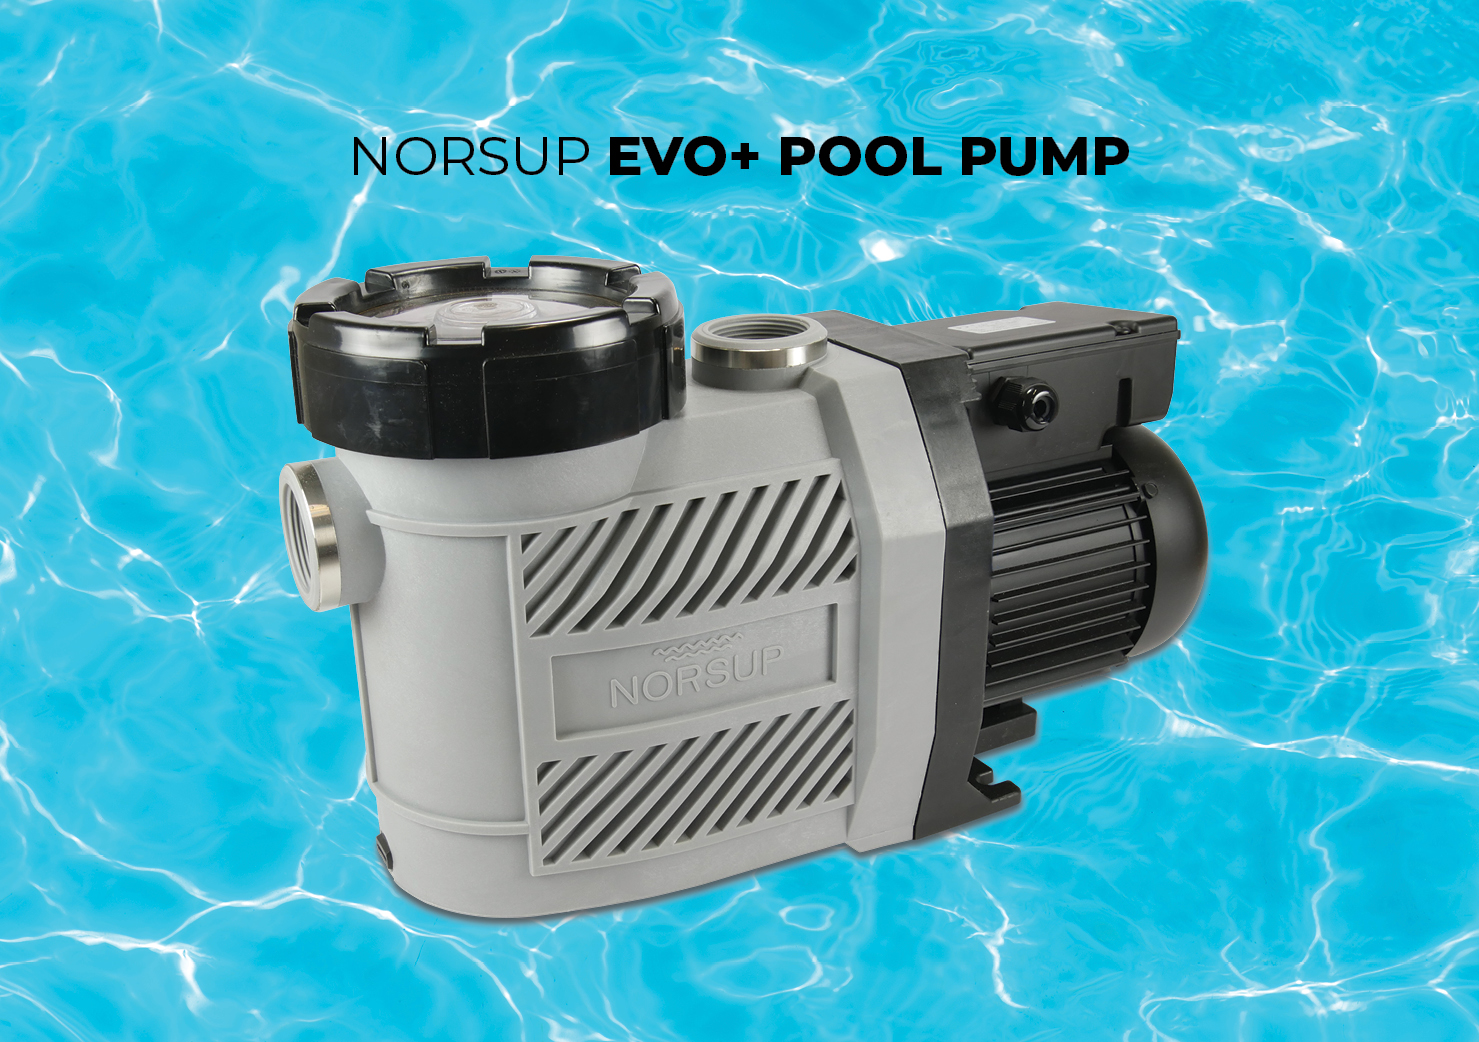 Norsup EVO+ pool pump